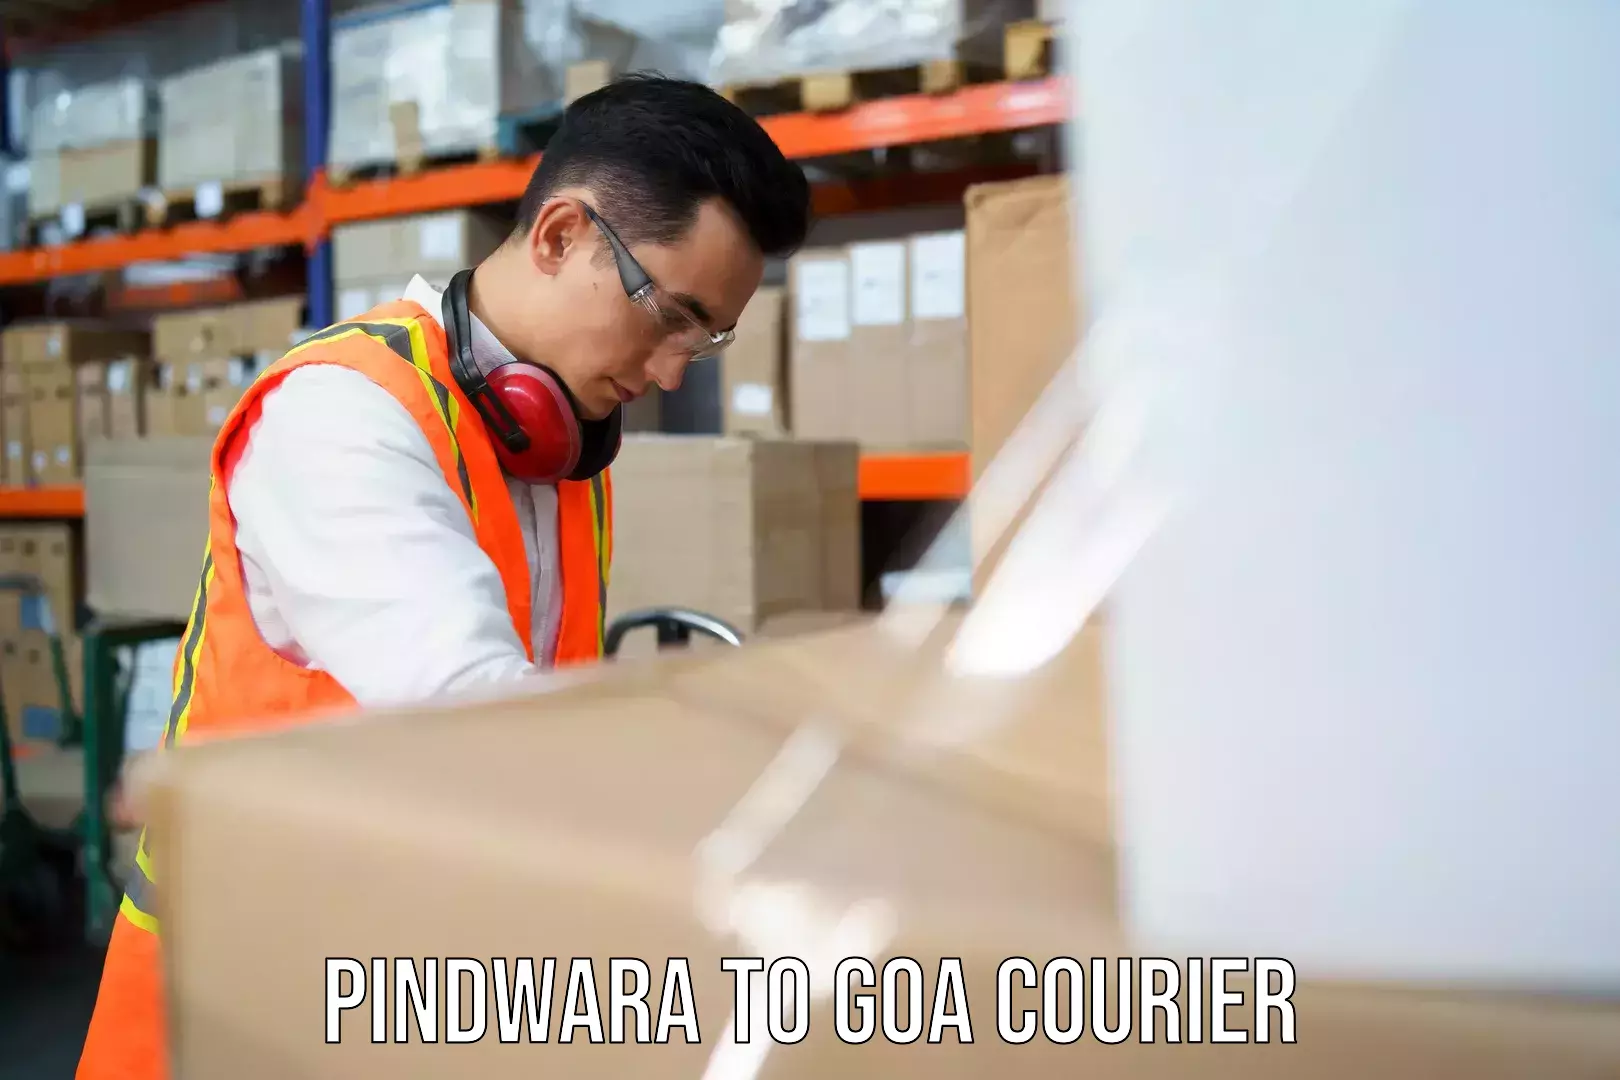 Courier dispatch services Pindwara to Bicholim